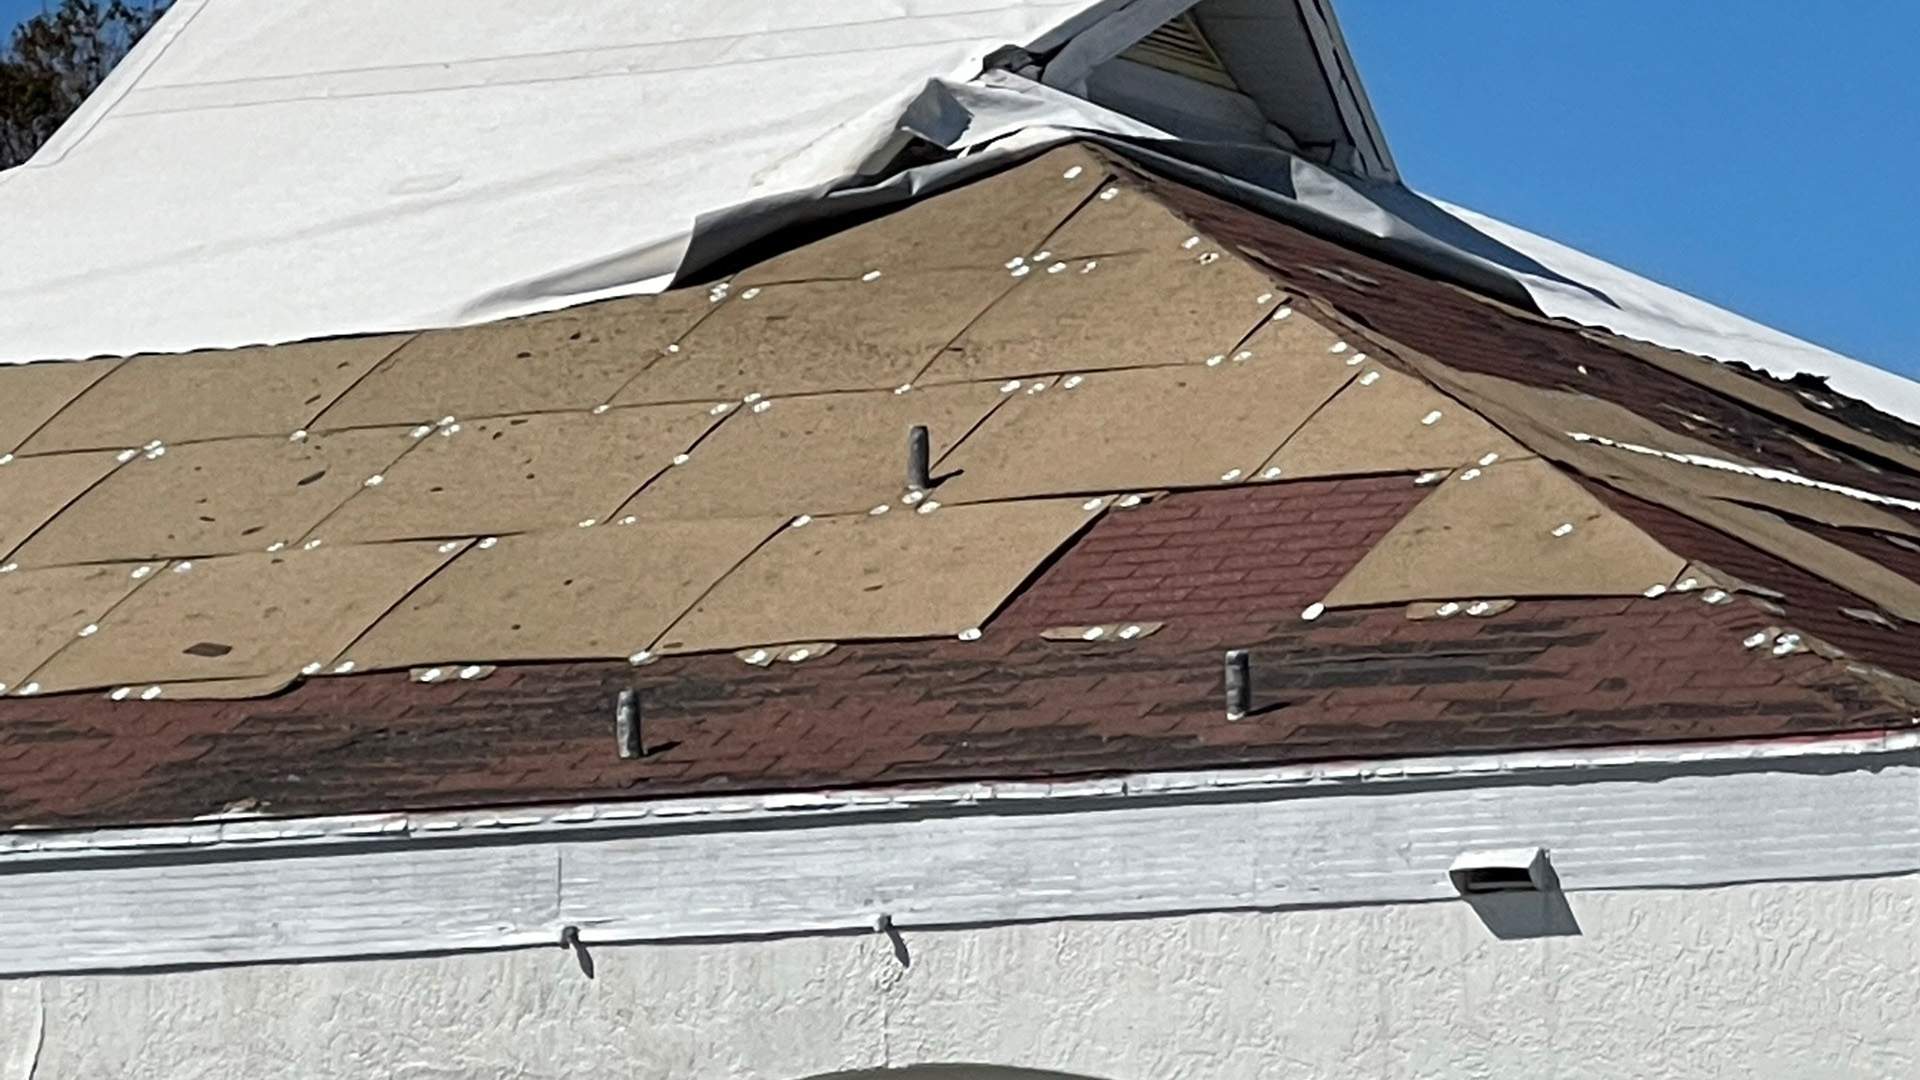 Major roof damage